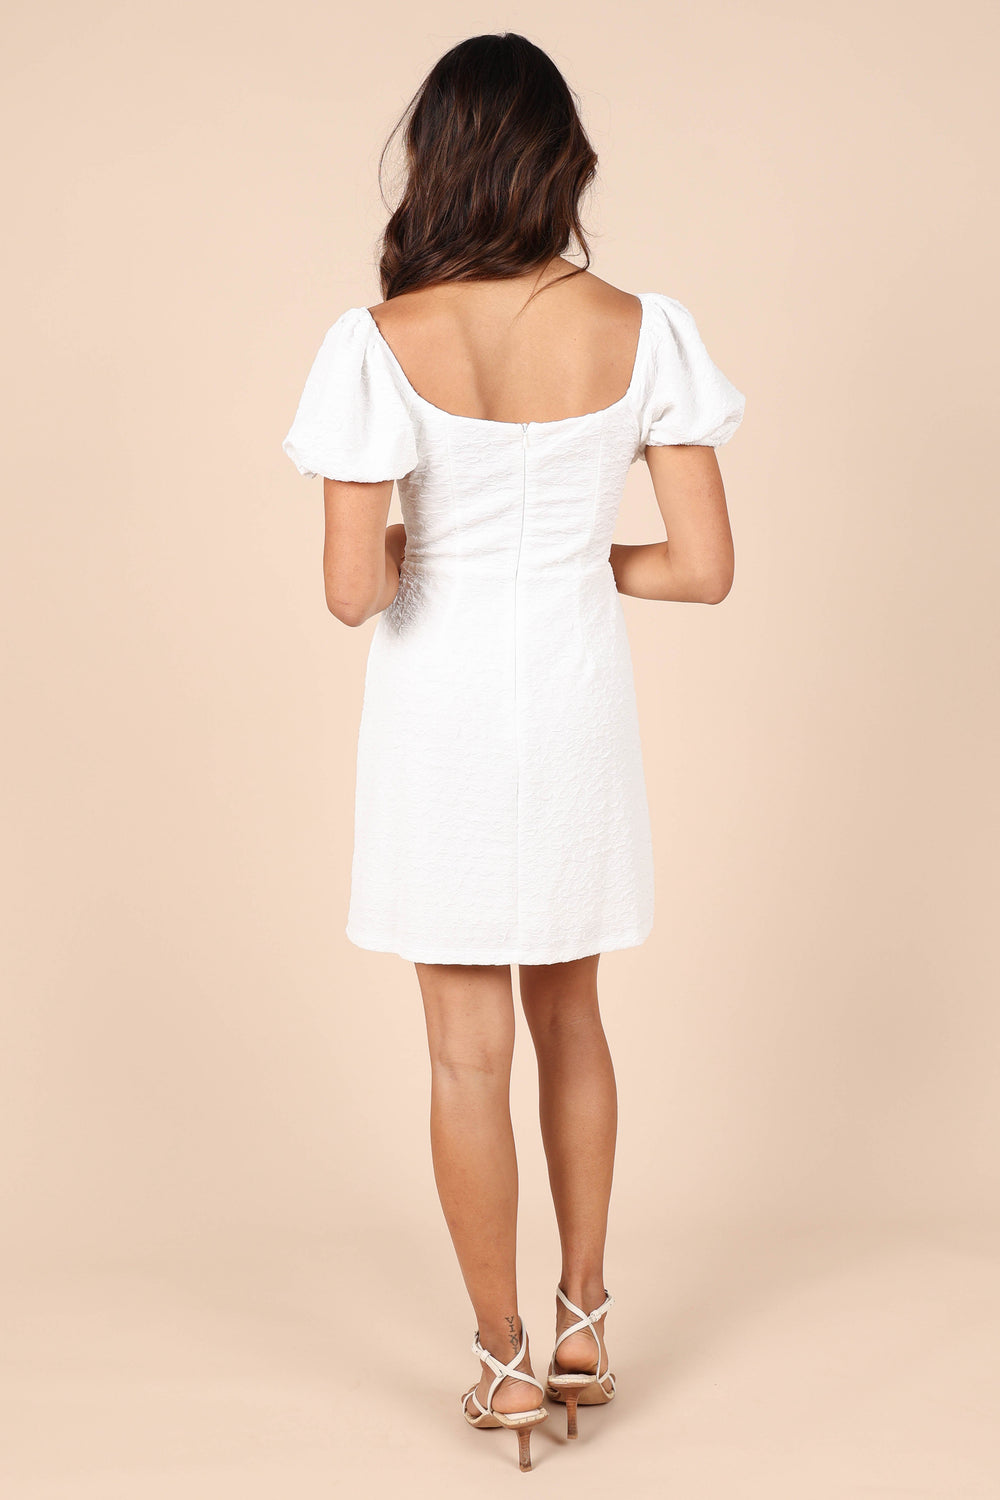 Petal and Pup USA DRESSES Baxie Mini Dress - White